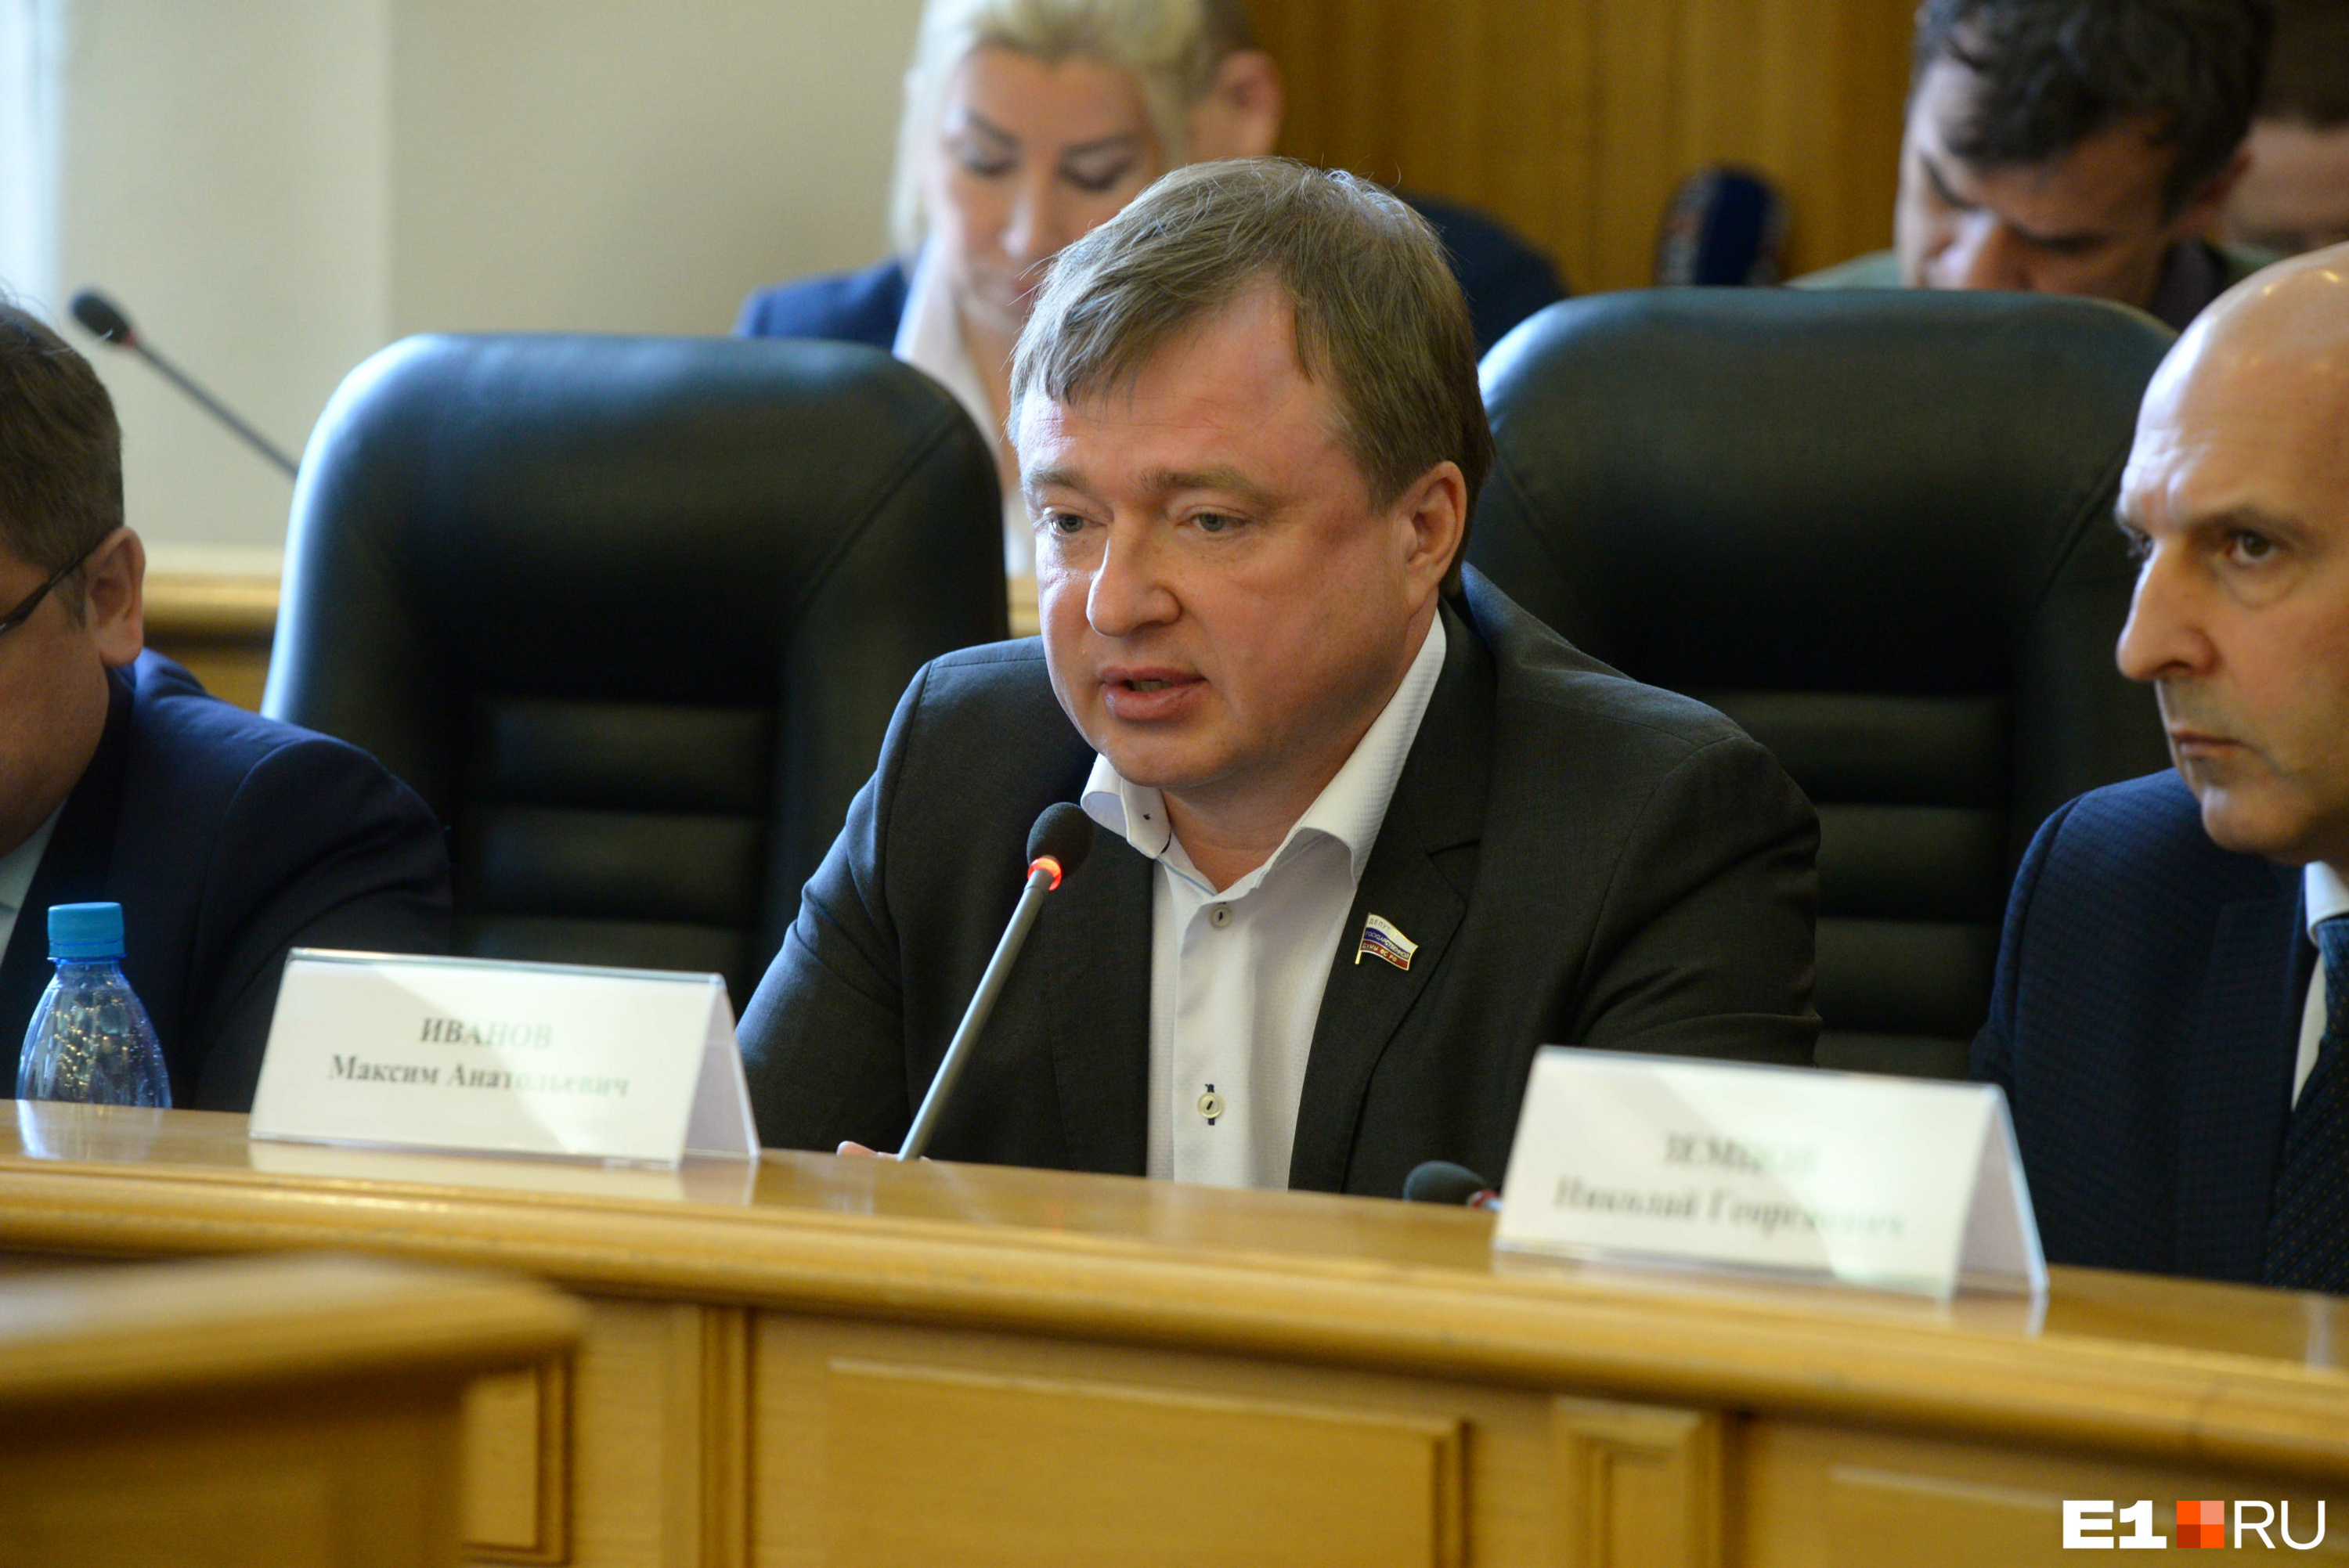 Максим Иванов в 2016 году избрался депутатом Государственной Думы от «Единой России»